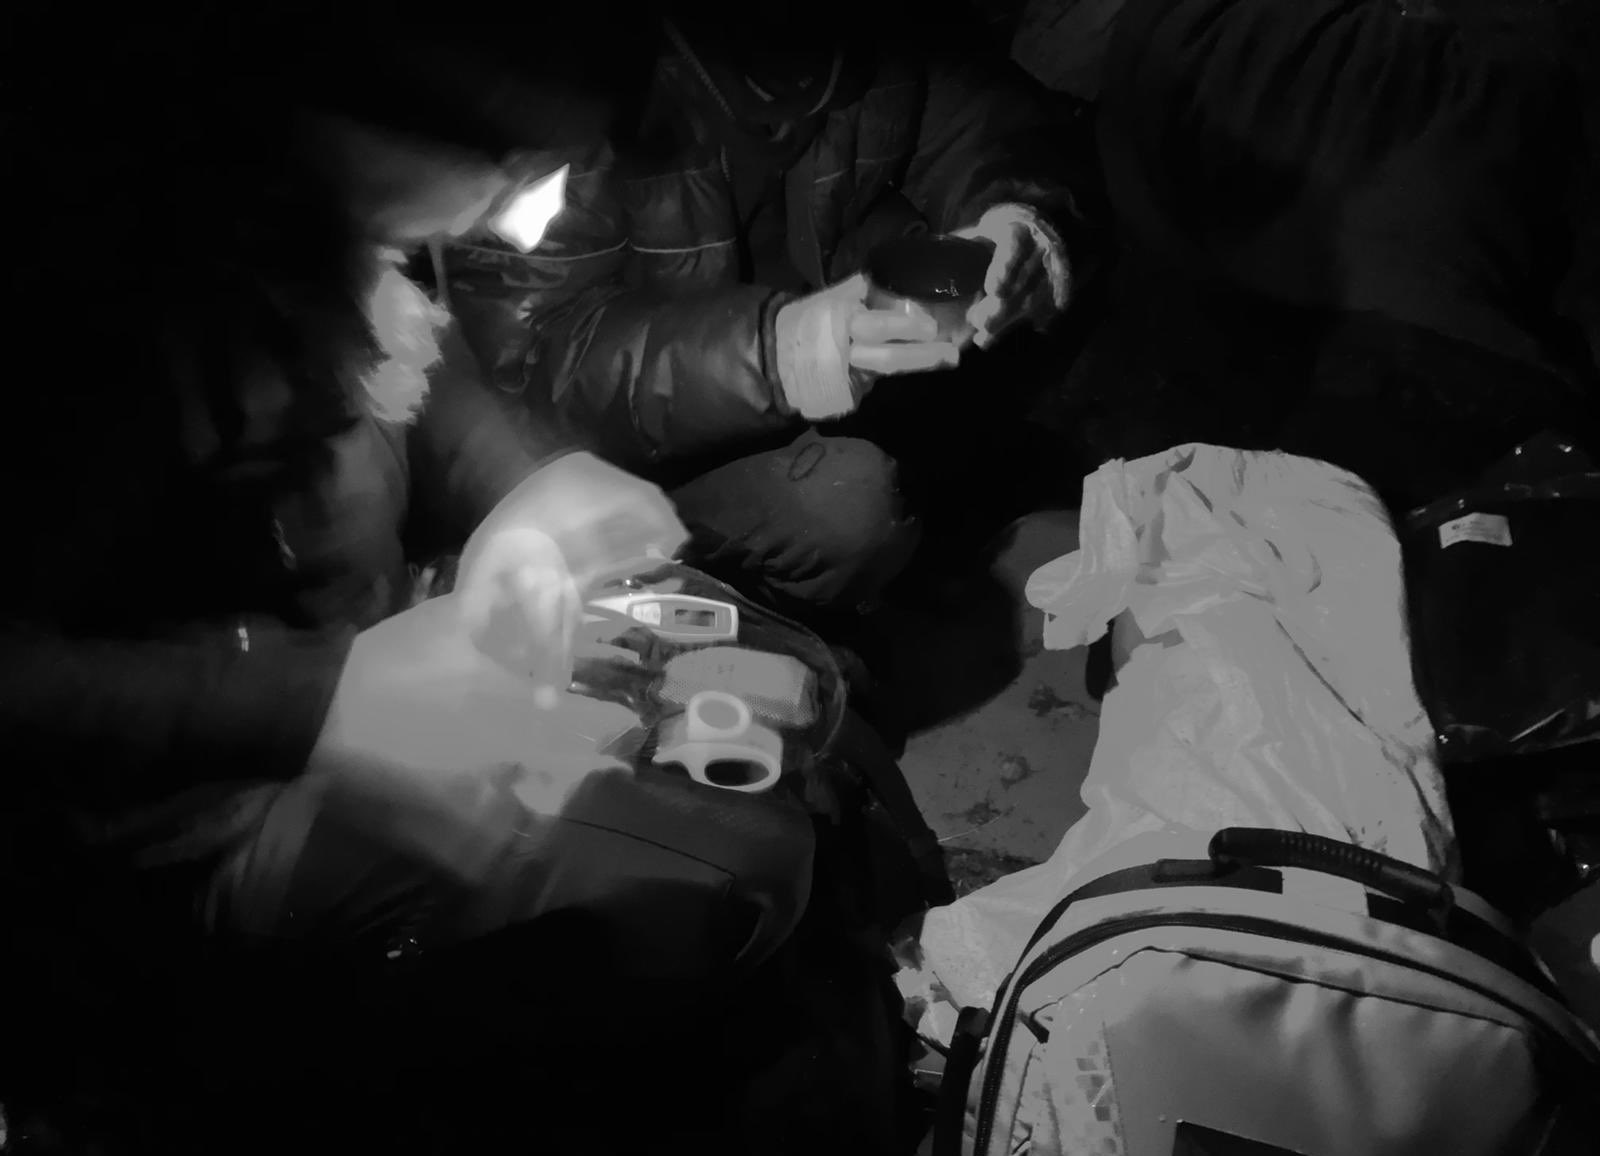 У сирийской пары на границе Польши и Беларуси умер годовалый ребенок / фото twitter.com/RatownicyPCPM